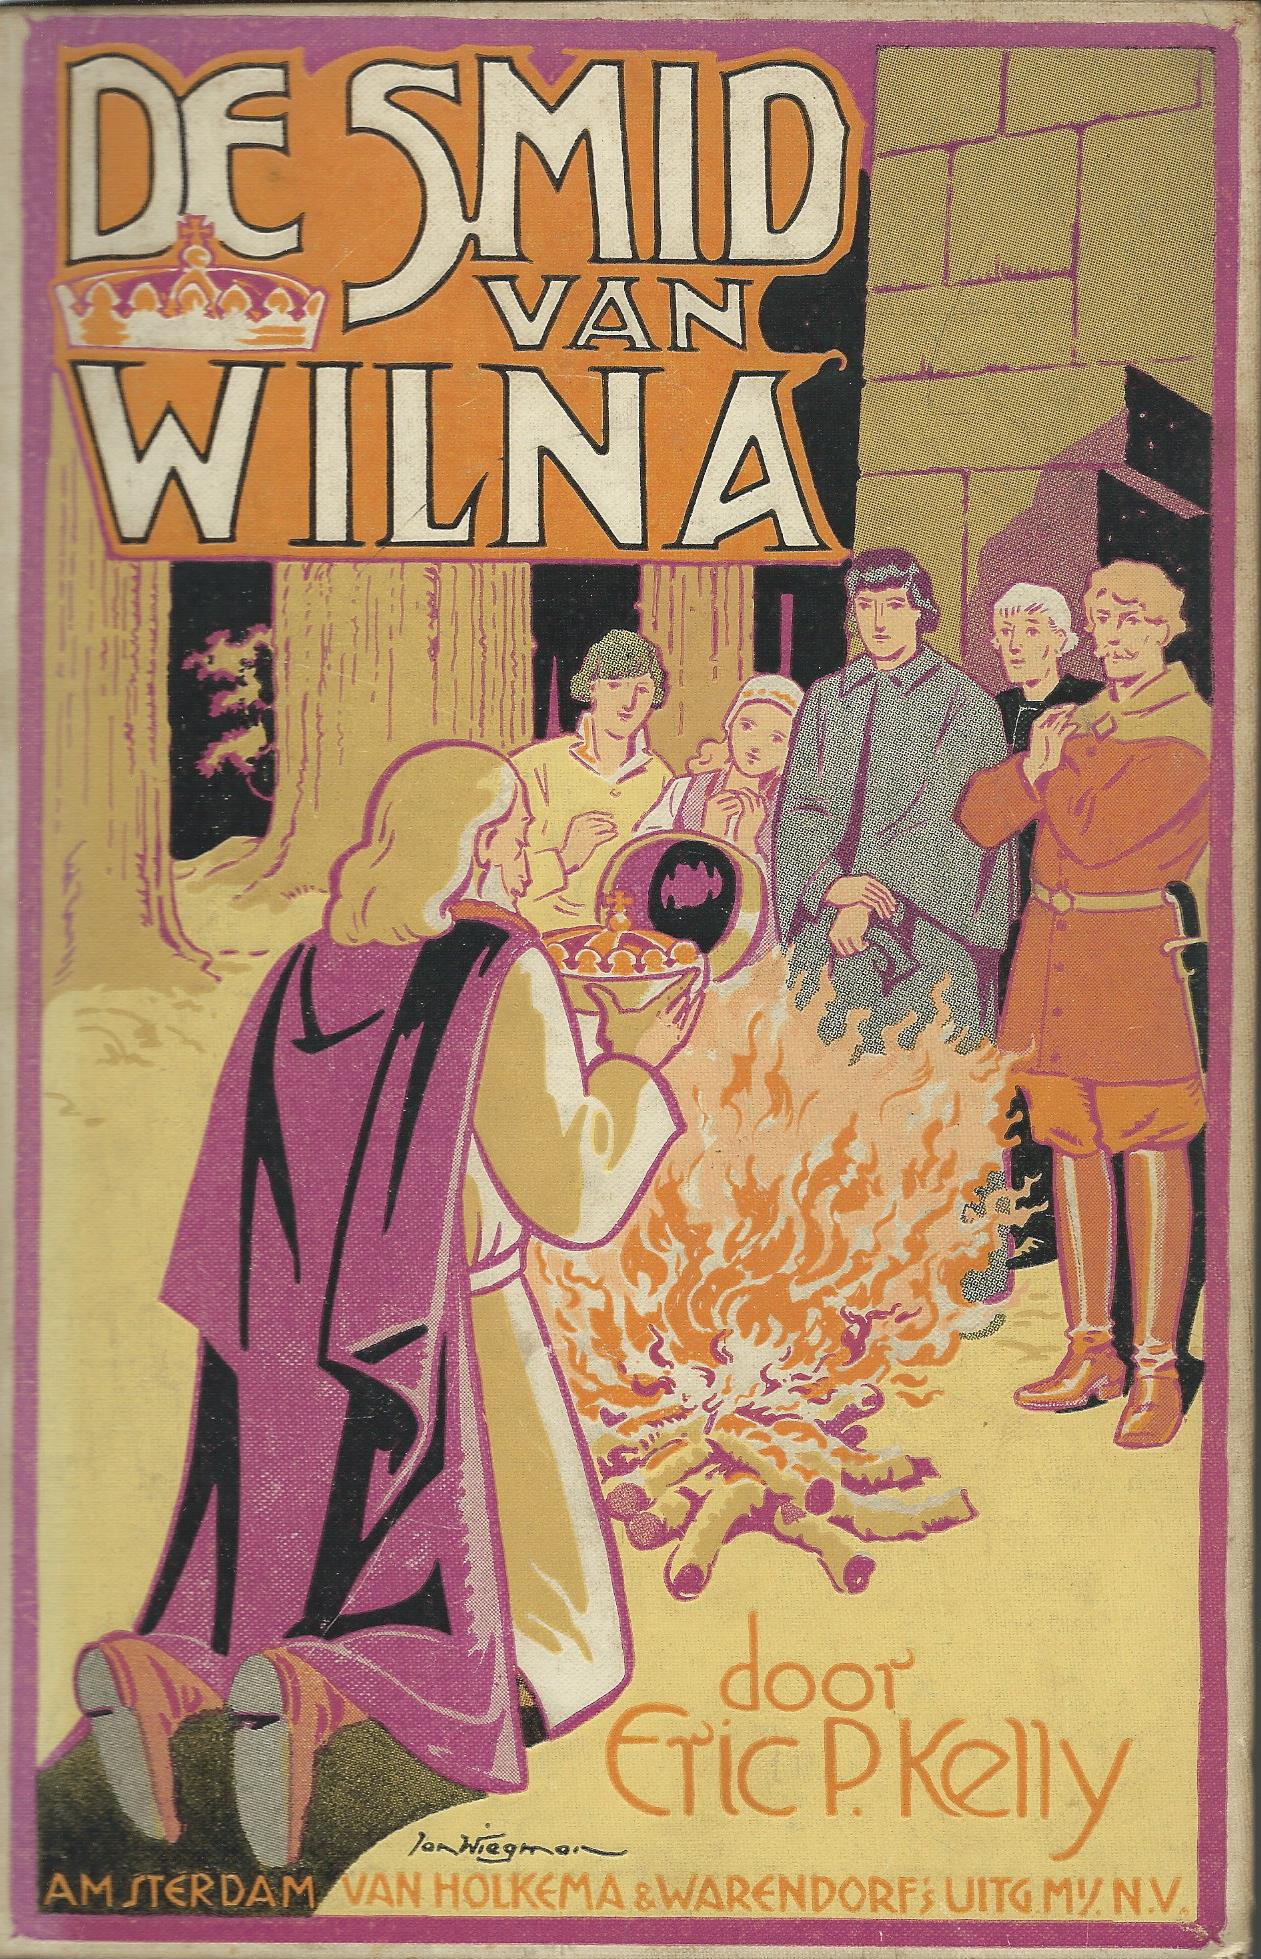 Jan Wiegman, ill. bij 'De smid van Wilna' door Eric P.Kelly